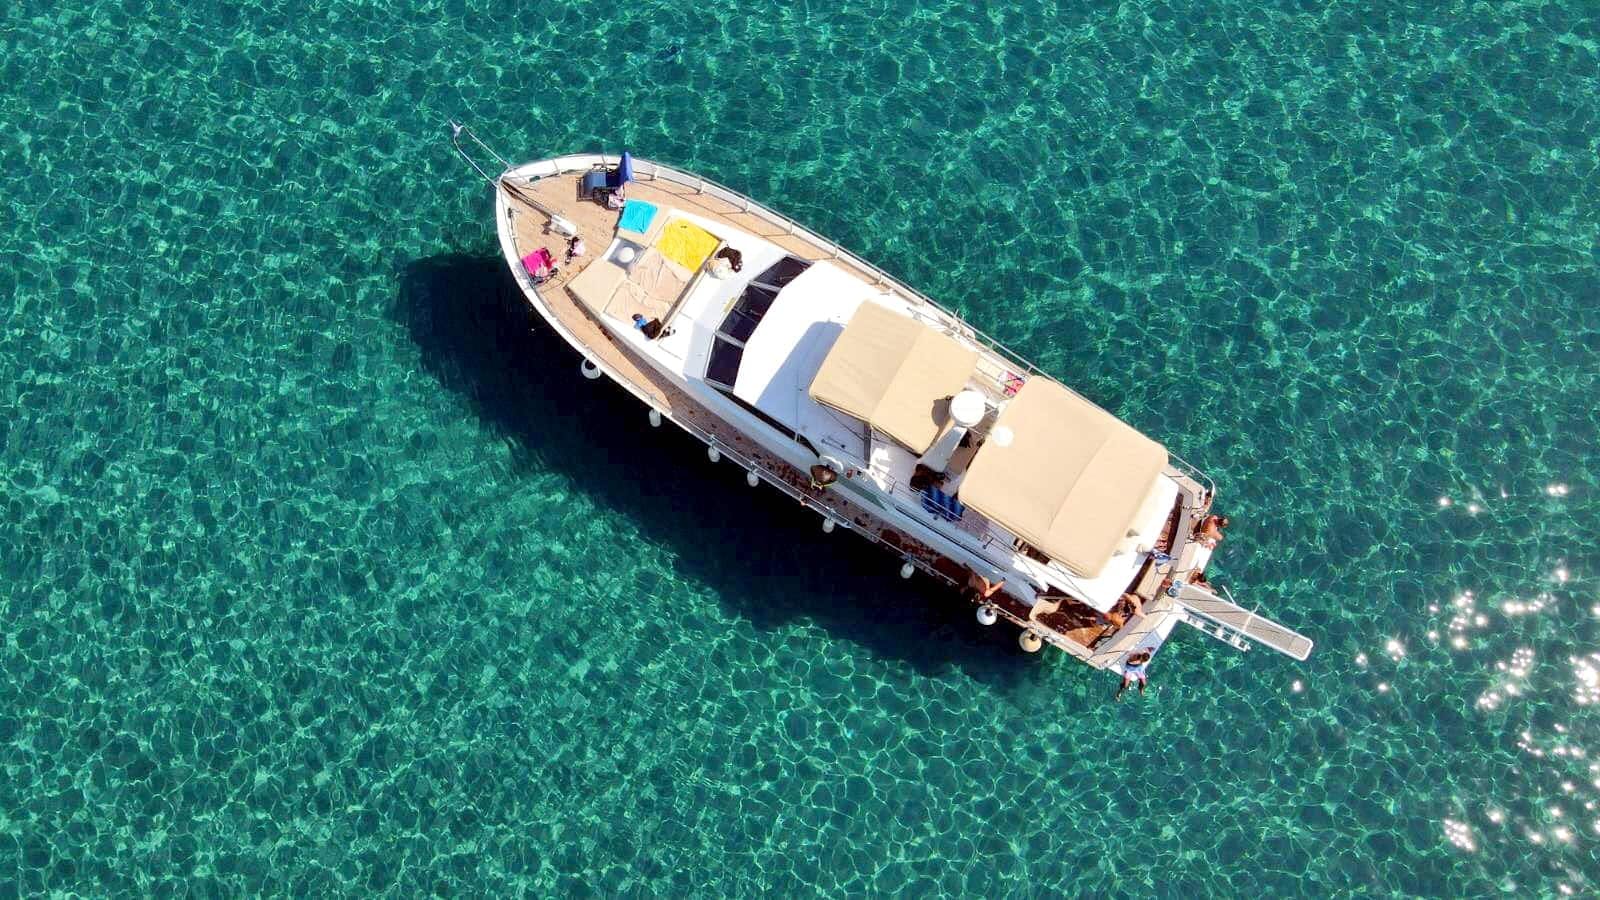 Rhodos östkust yachttur med transfer – endast för vuxna